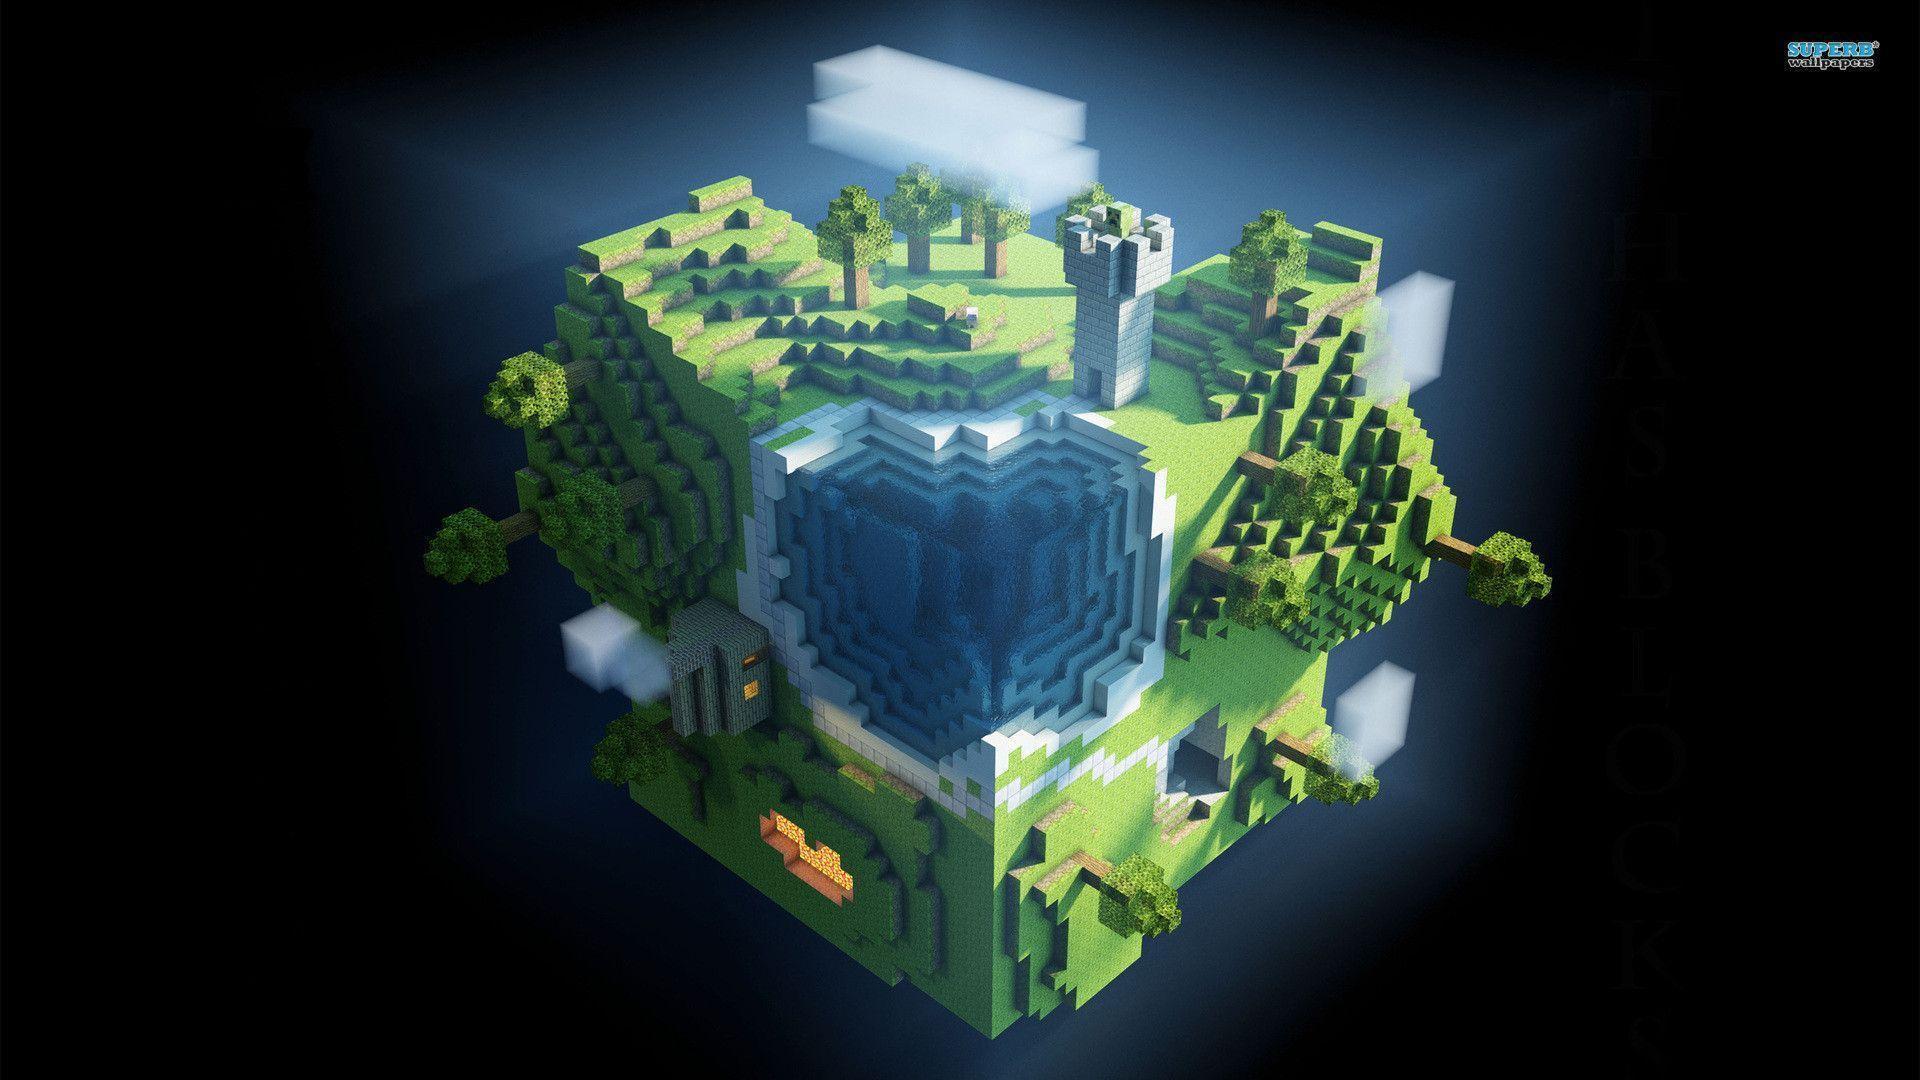 Fondos de Minecraft 1920x1080 - Fondo de pantalla de la cueva